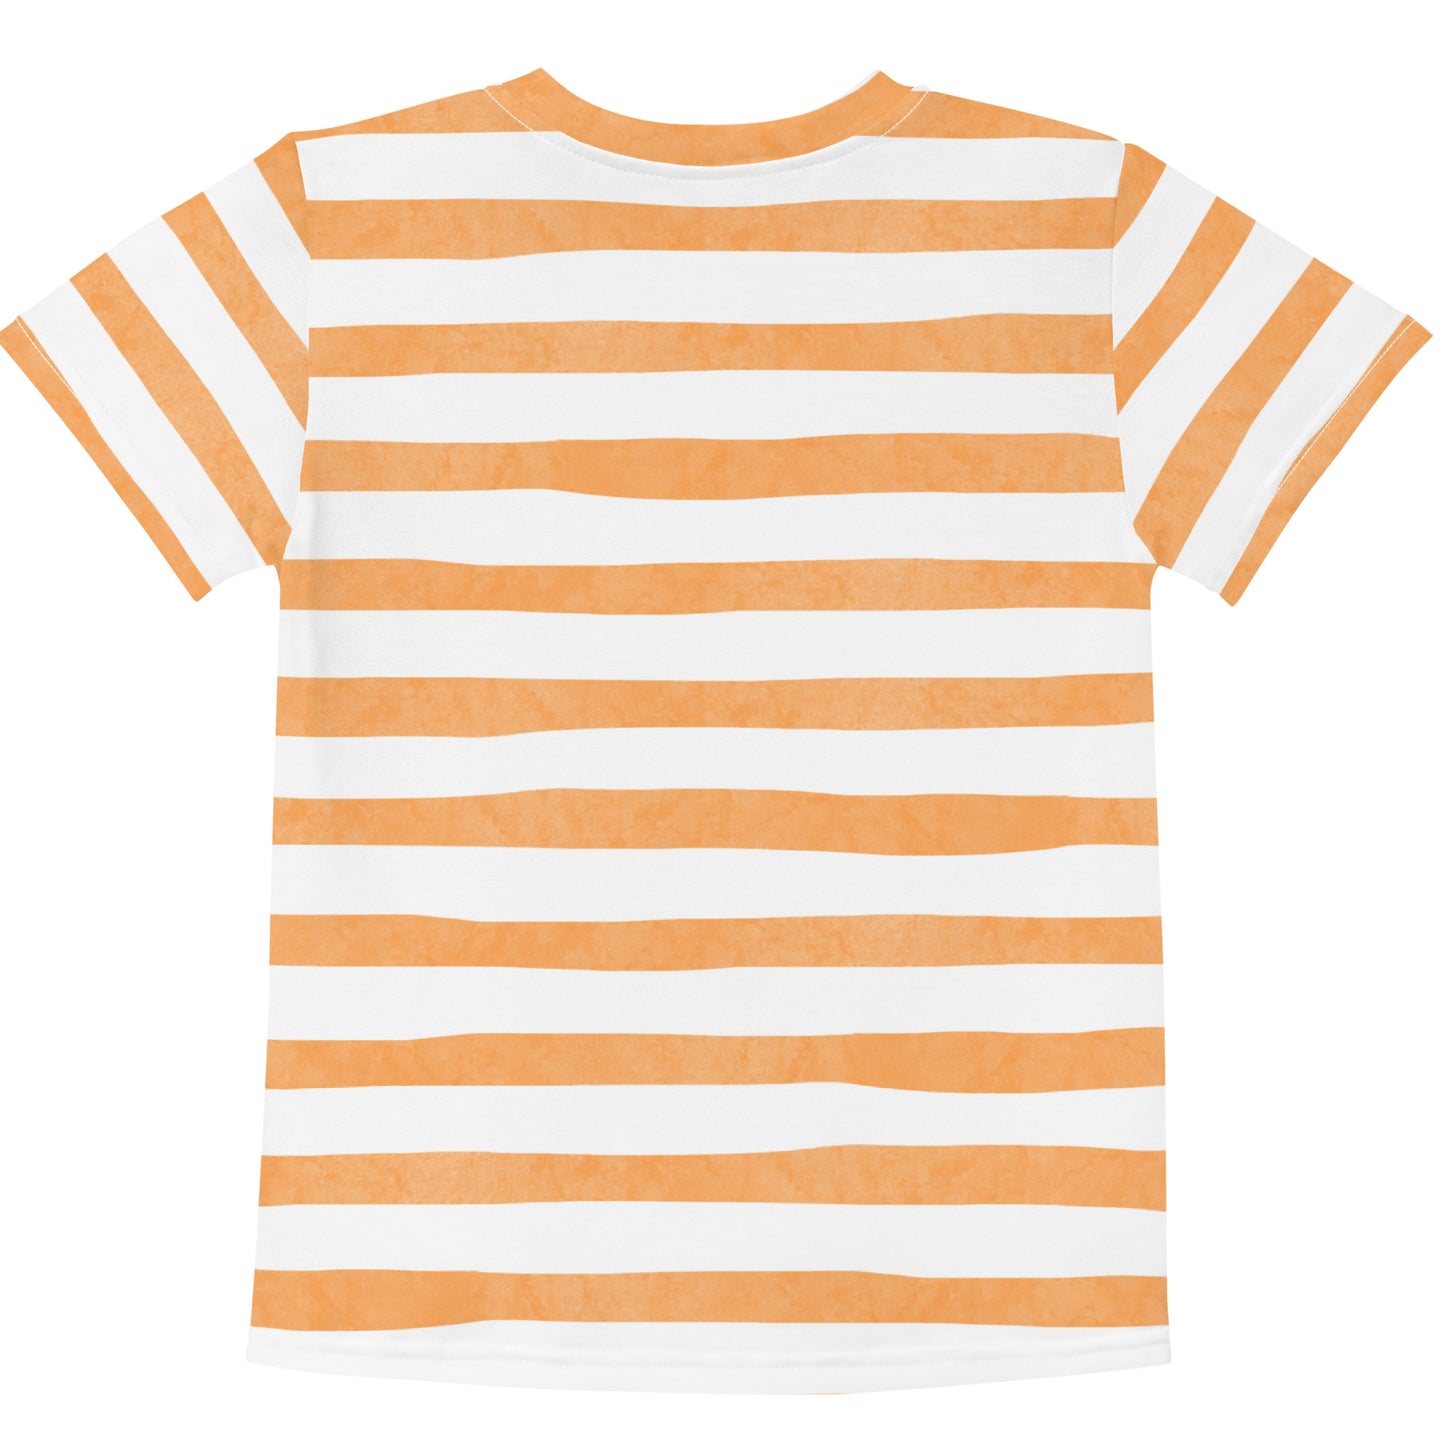 Daniel’s Lion Boys Striped T-Shirt